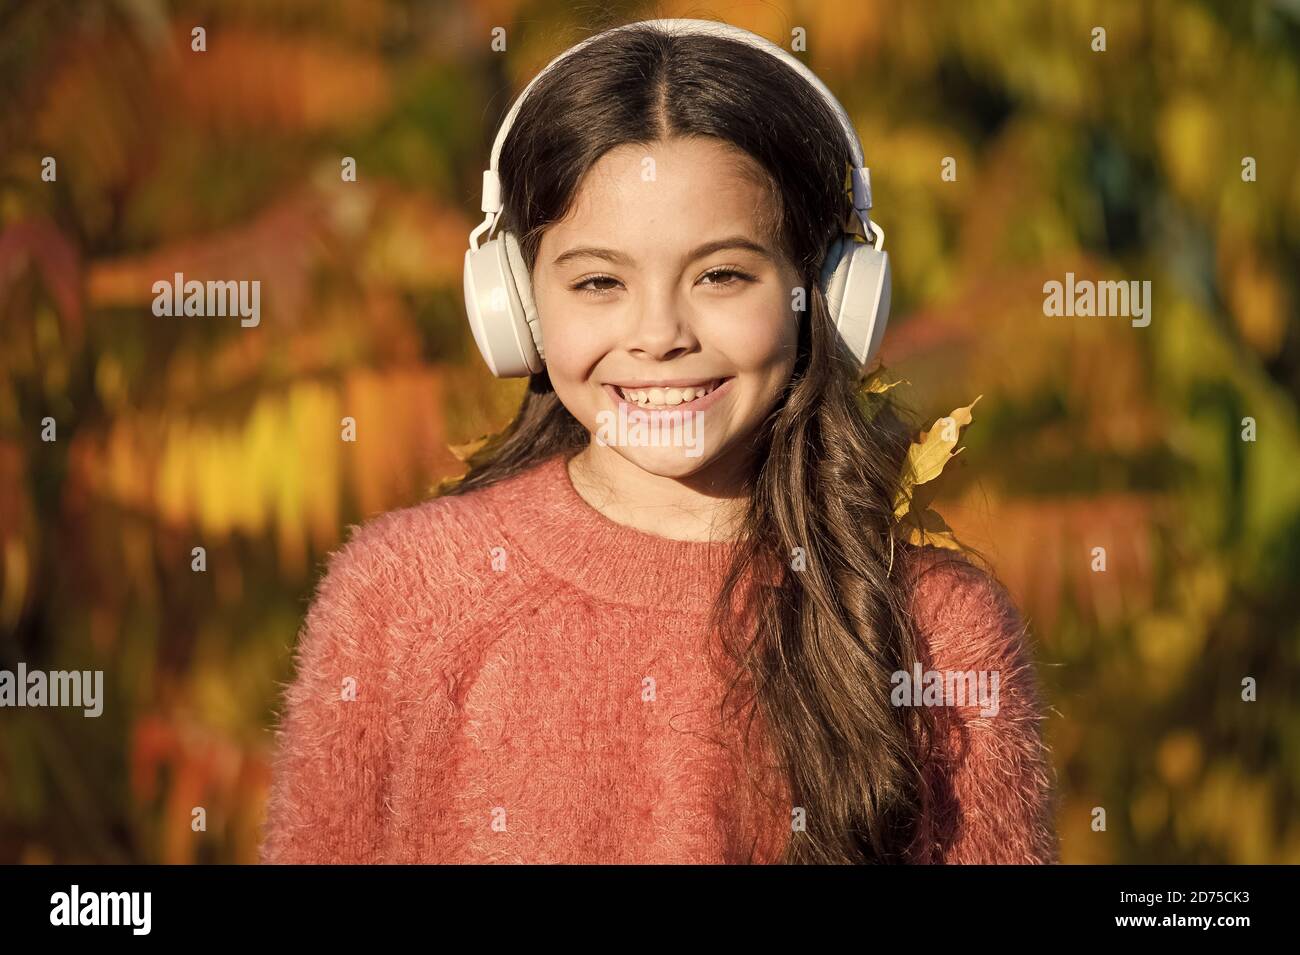 Pour l'éducation et à télécharger des livres audio pour les enfants. Kid girl relaxing près de l'arbre d'automne avec le casque. La musique pour l'humeur d'automne. Chanson d'écoute. Profitez de la musique jour d'automne. Promenades d'automne avec de belles chansons. Banque D'Images